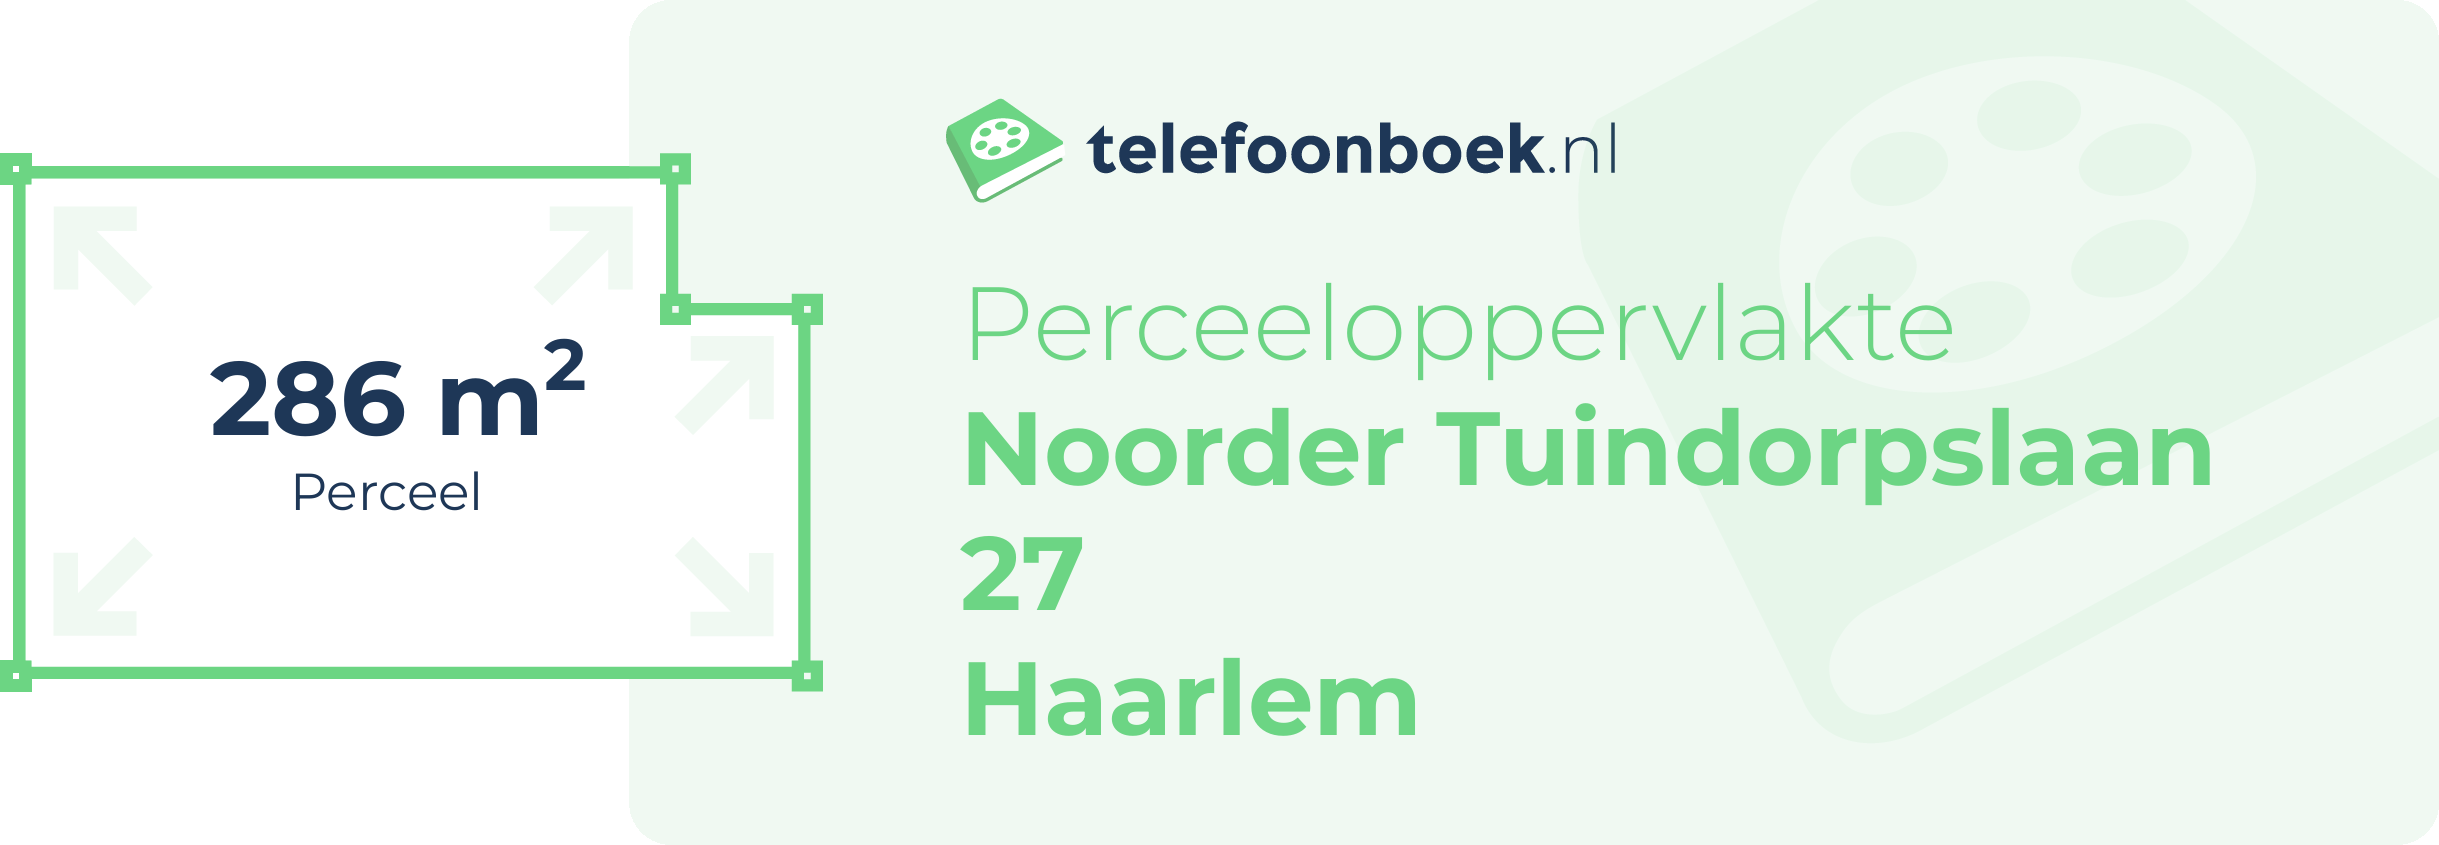 Perceeloppervlakte Noorder Tuindorpslaan 27 Haarlem